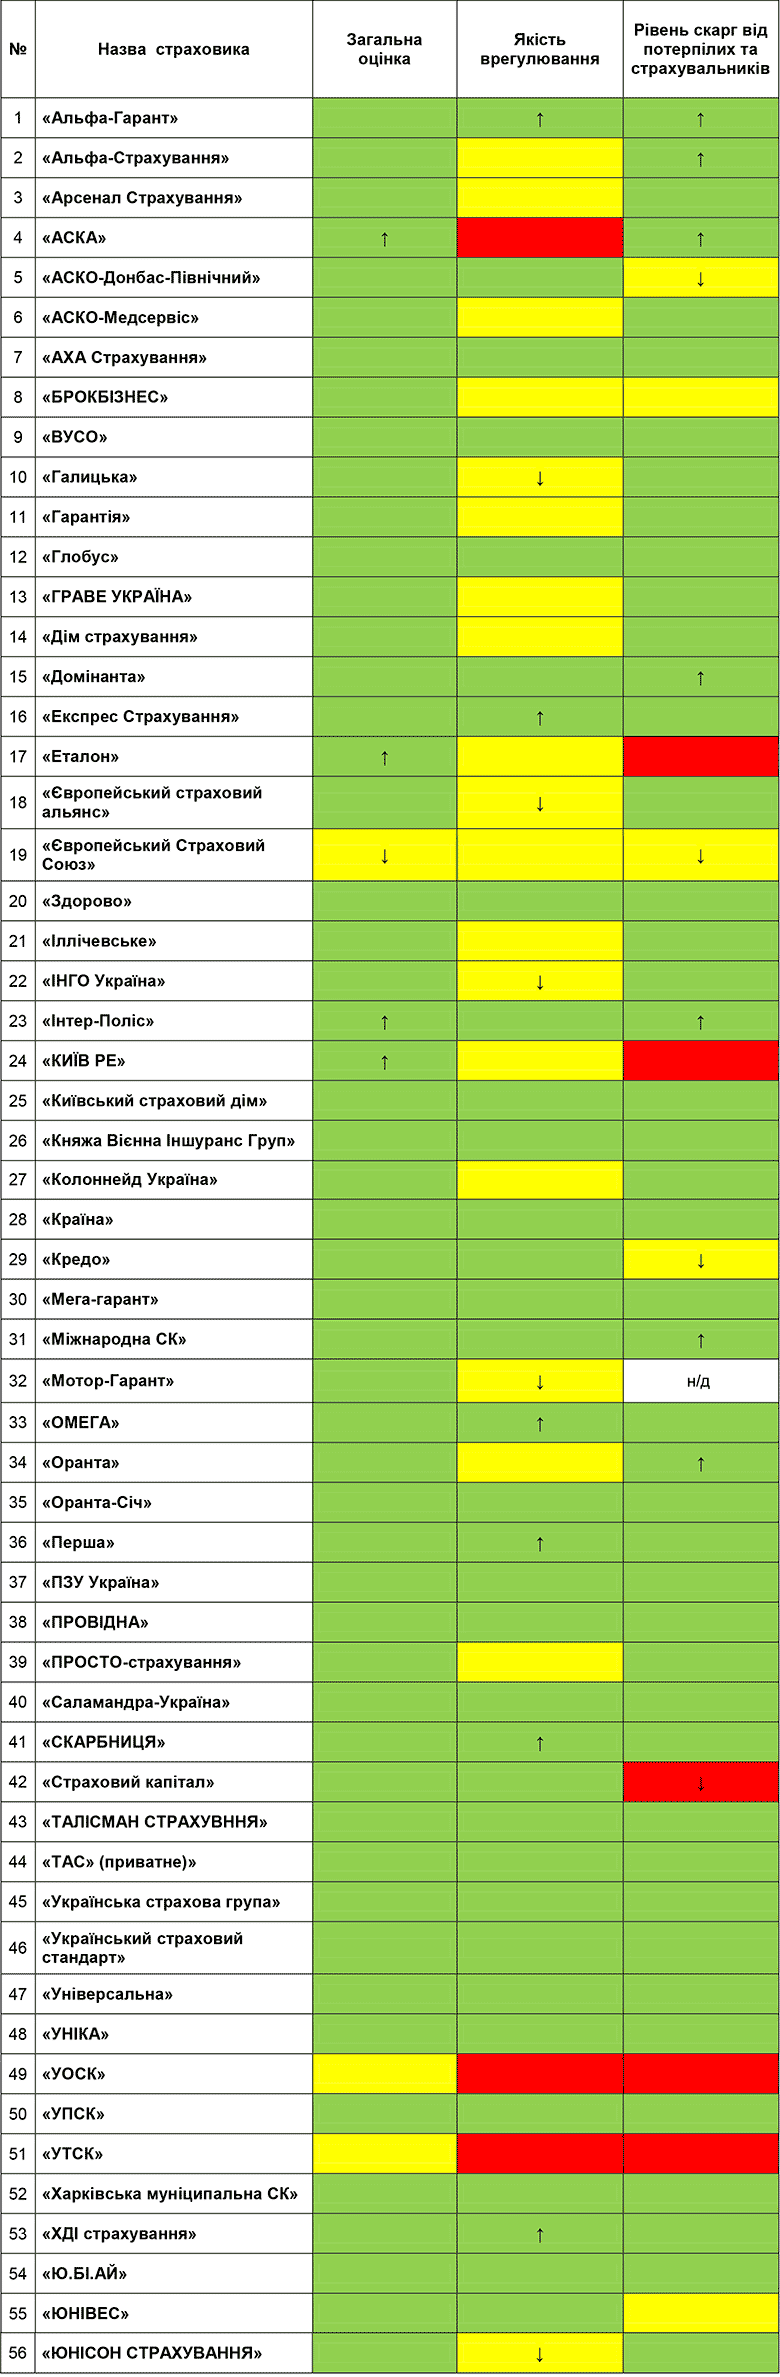  Показатели качества работы страховщиков ОСАГО за 2 квартал 2016 года